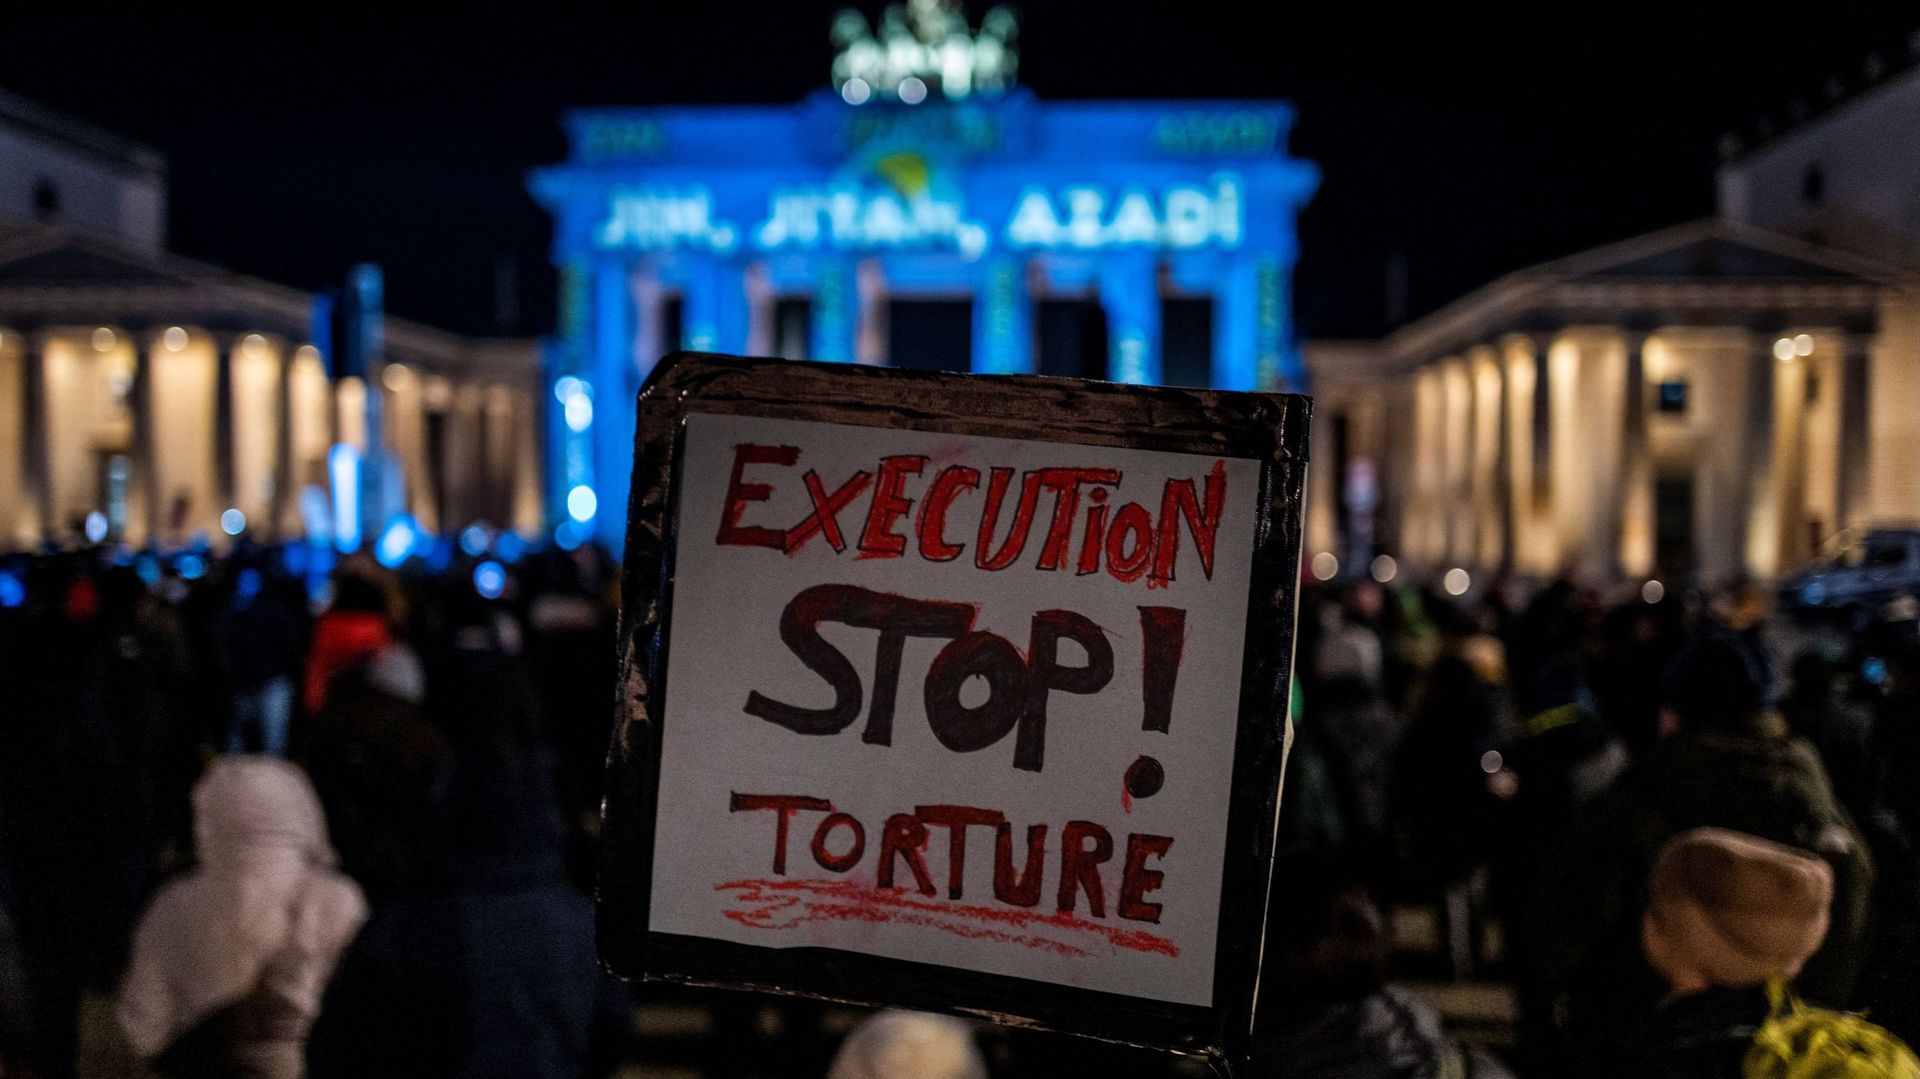 Un militant exhibe une pancarte portant l’inscription "Stop aux exécutions et à la torture", lors d’une manifestation de soutien aux manifestants en Iran, devant la Porte de Brandebourg illuminée des mots "Femme, Vie, Liberté" en plusieurs langues dont le